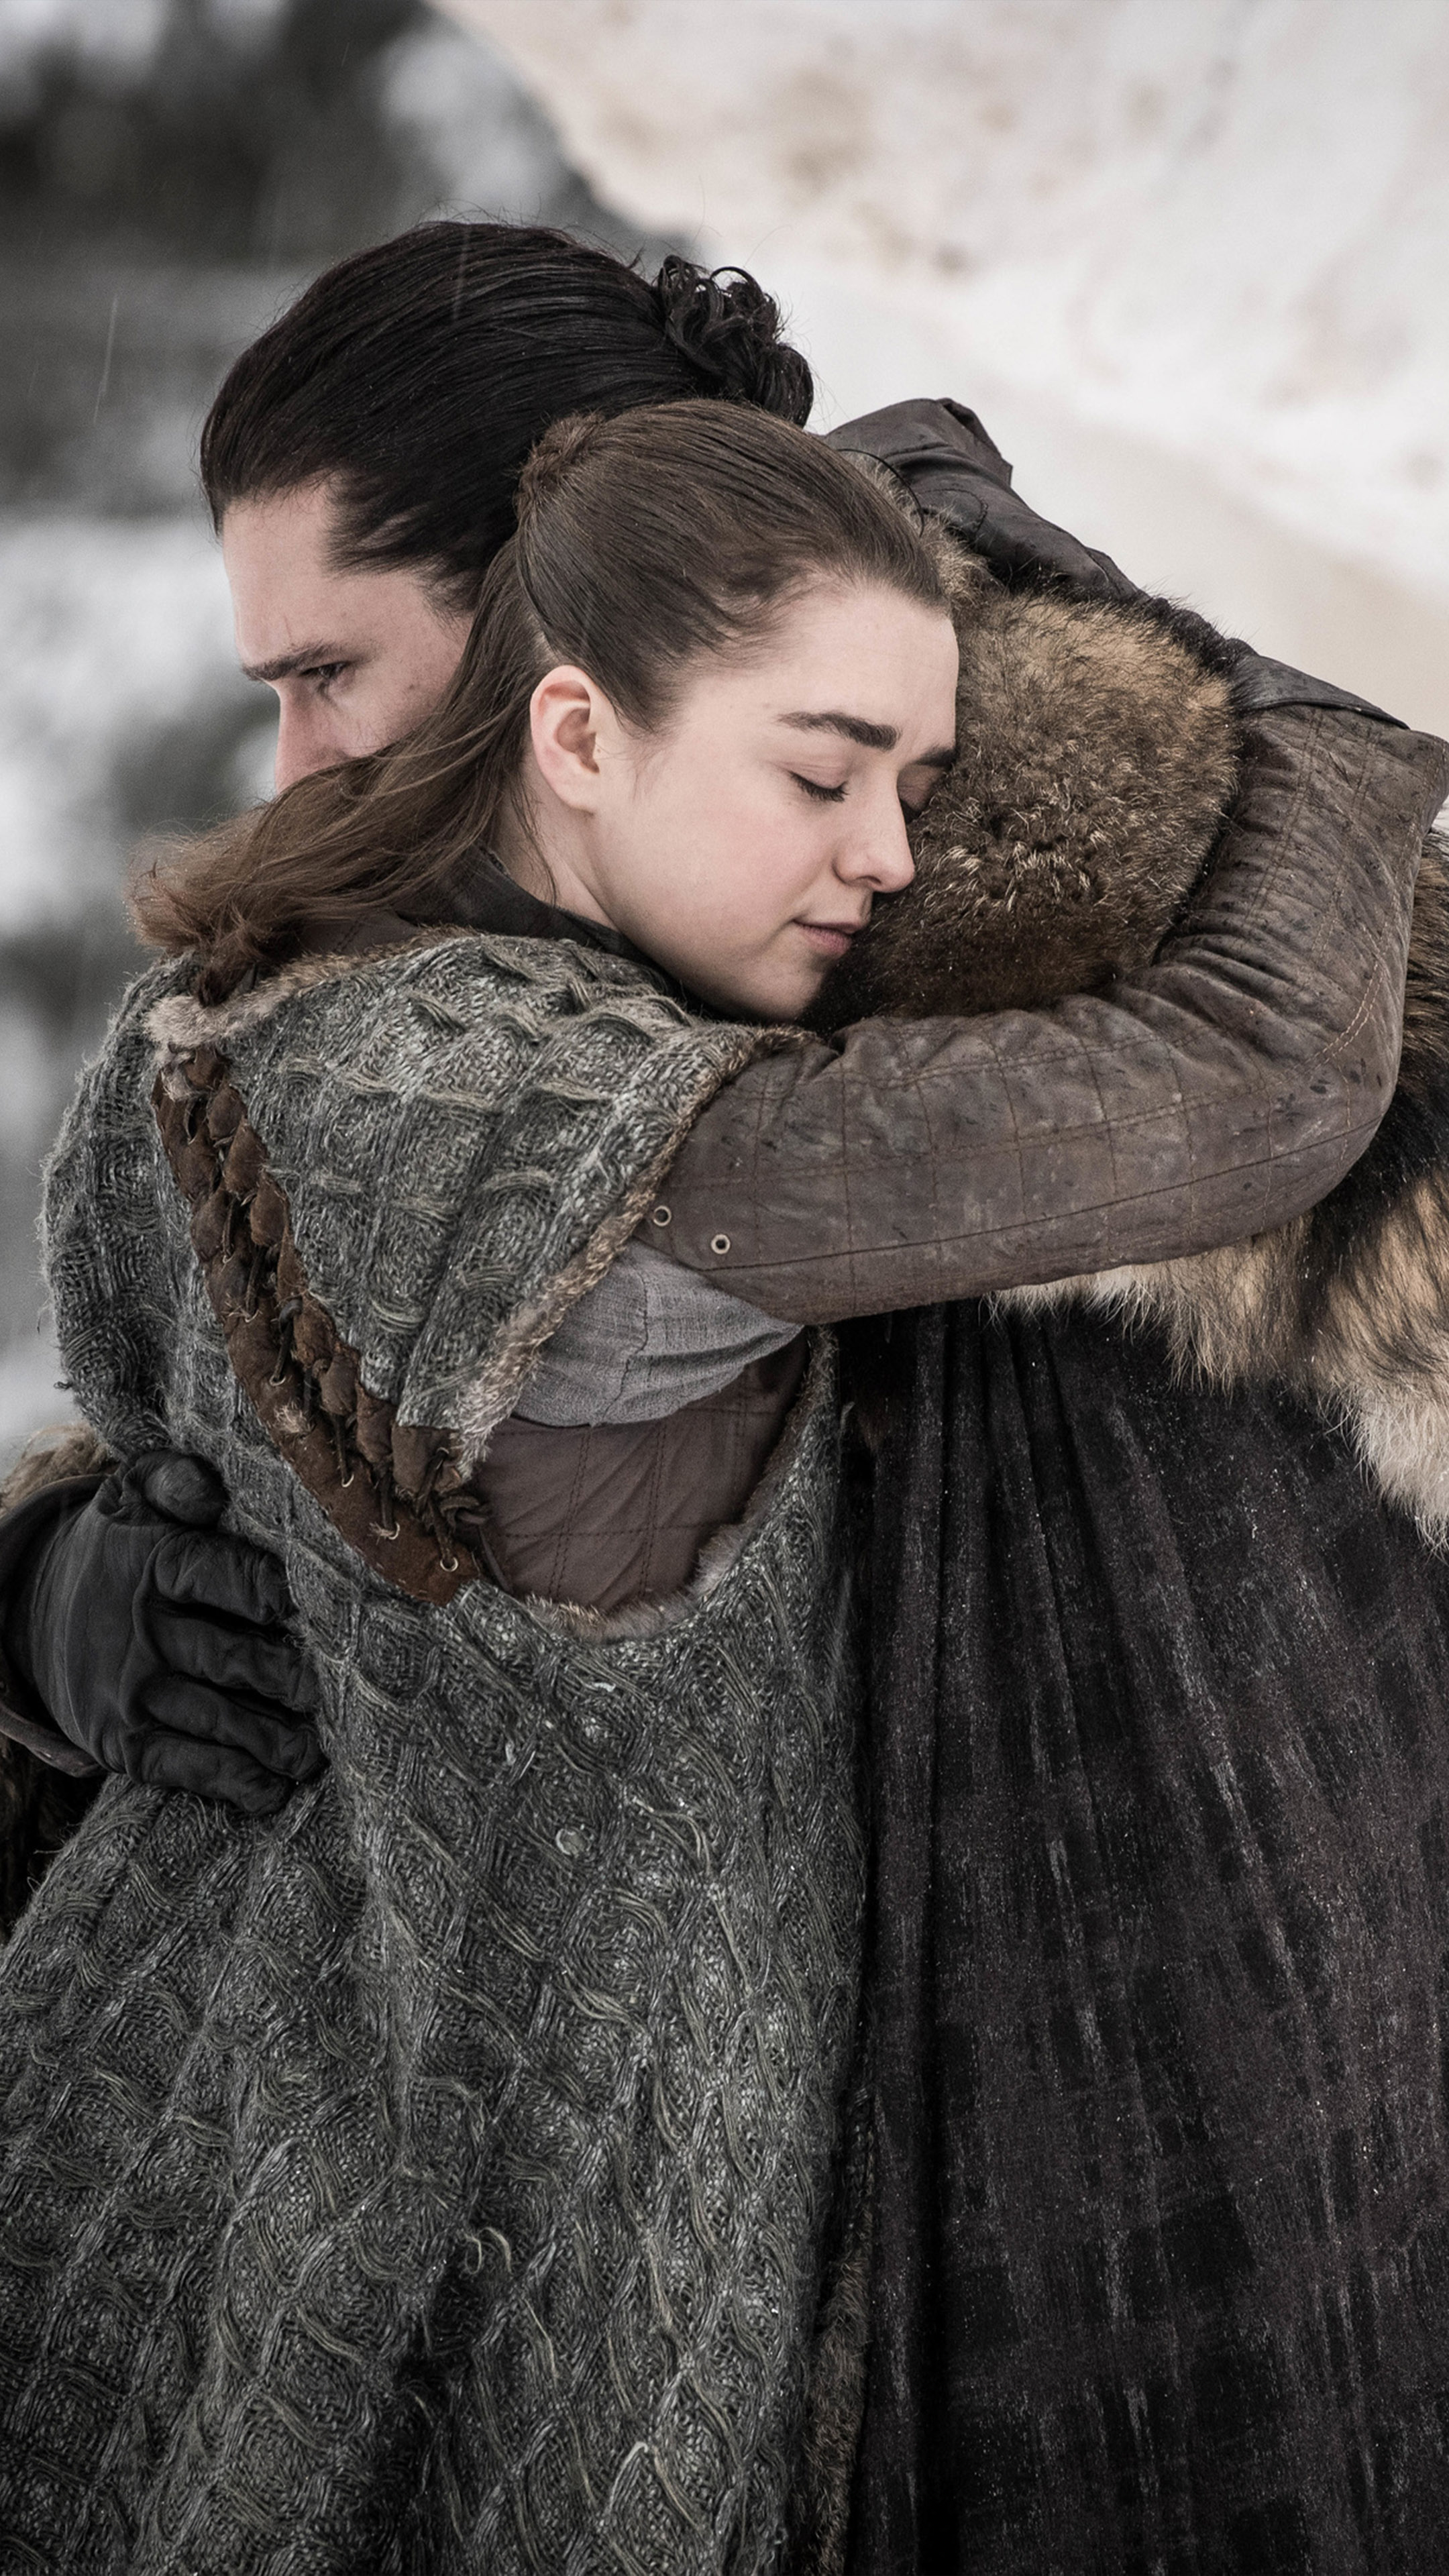 Jon Snow Arya Stark In Game Of Thrones S8 4k Ultra Hd Mobile Wallpaper